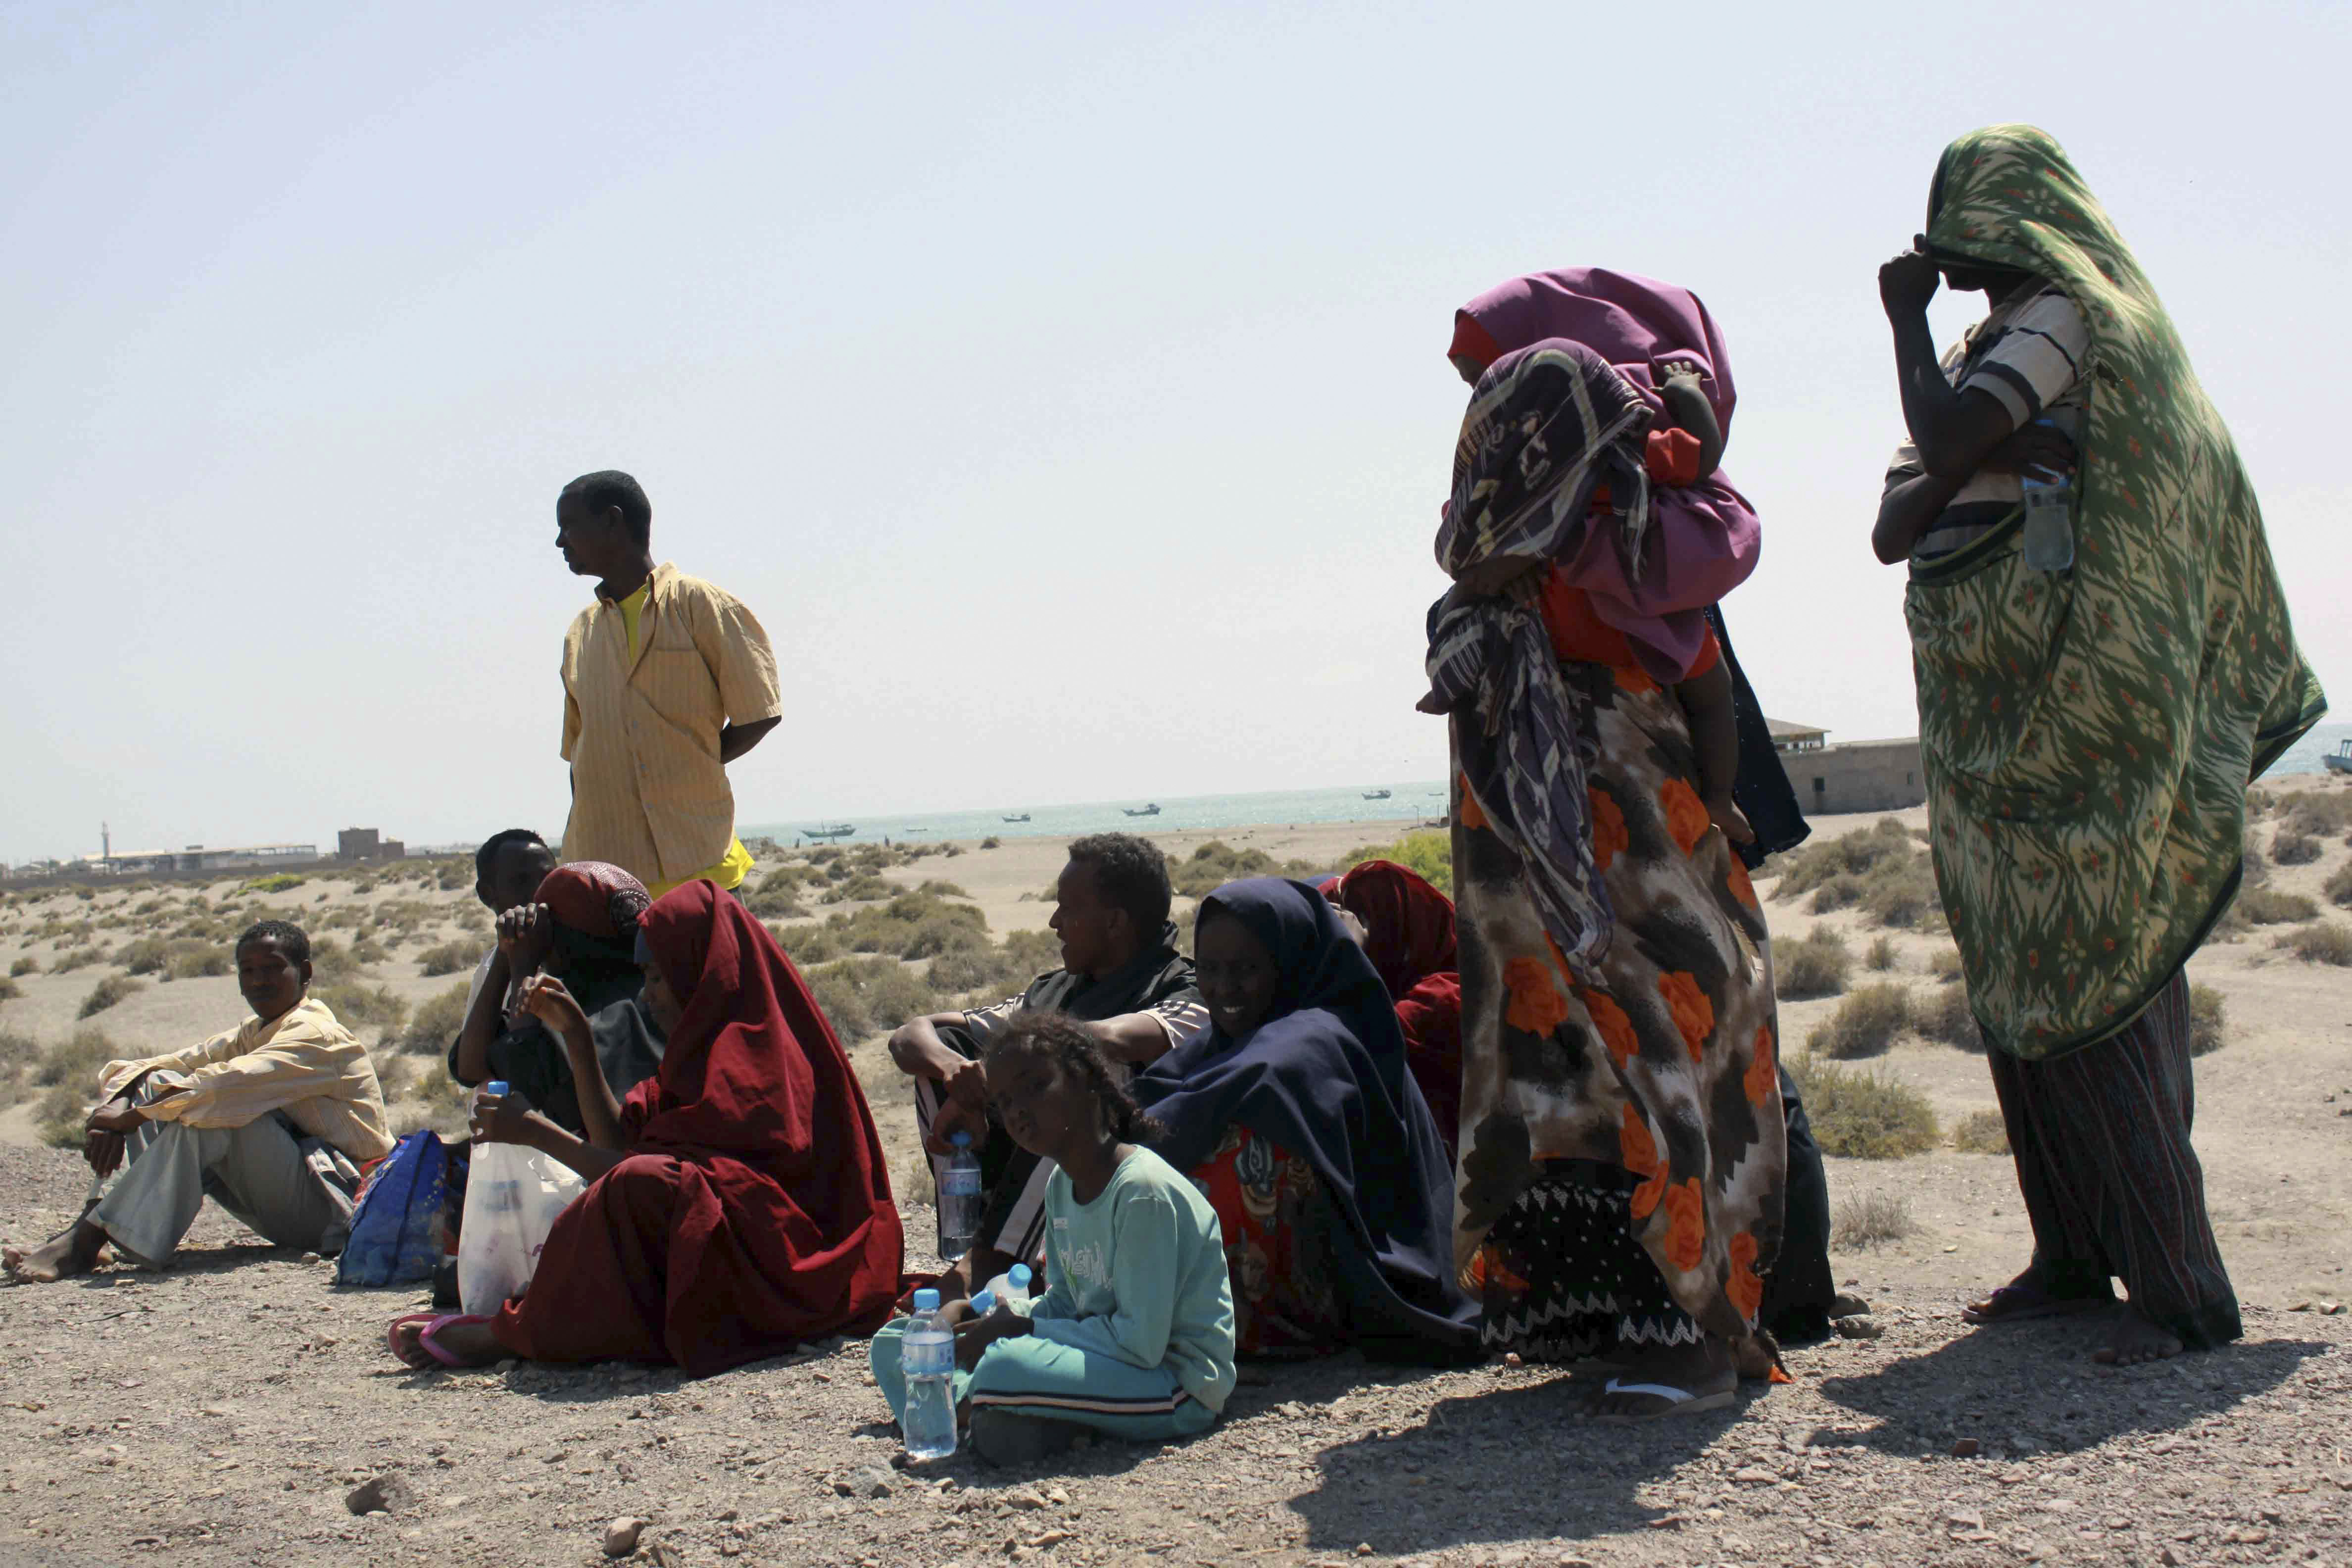 今年超过3万名难民及移民人士犯险 从水路进入也门